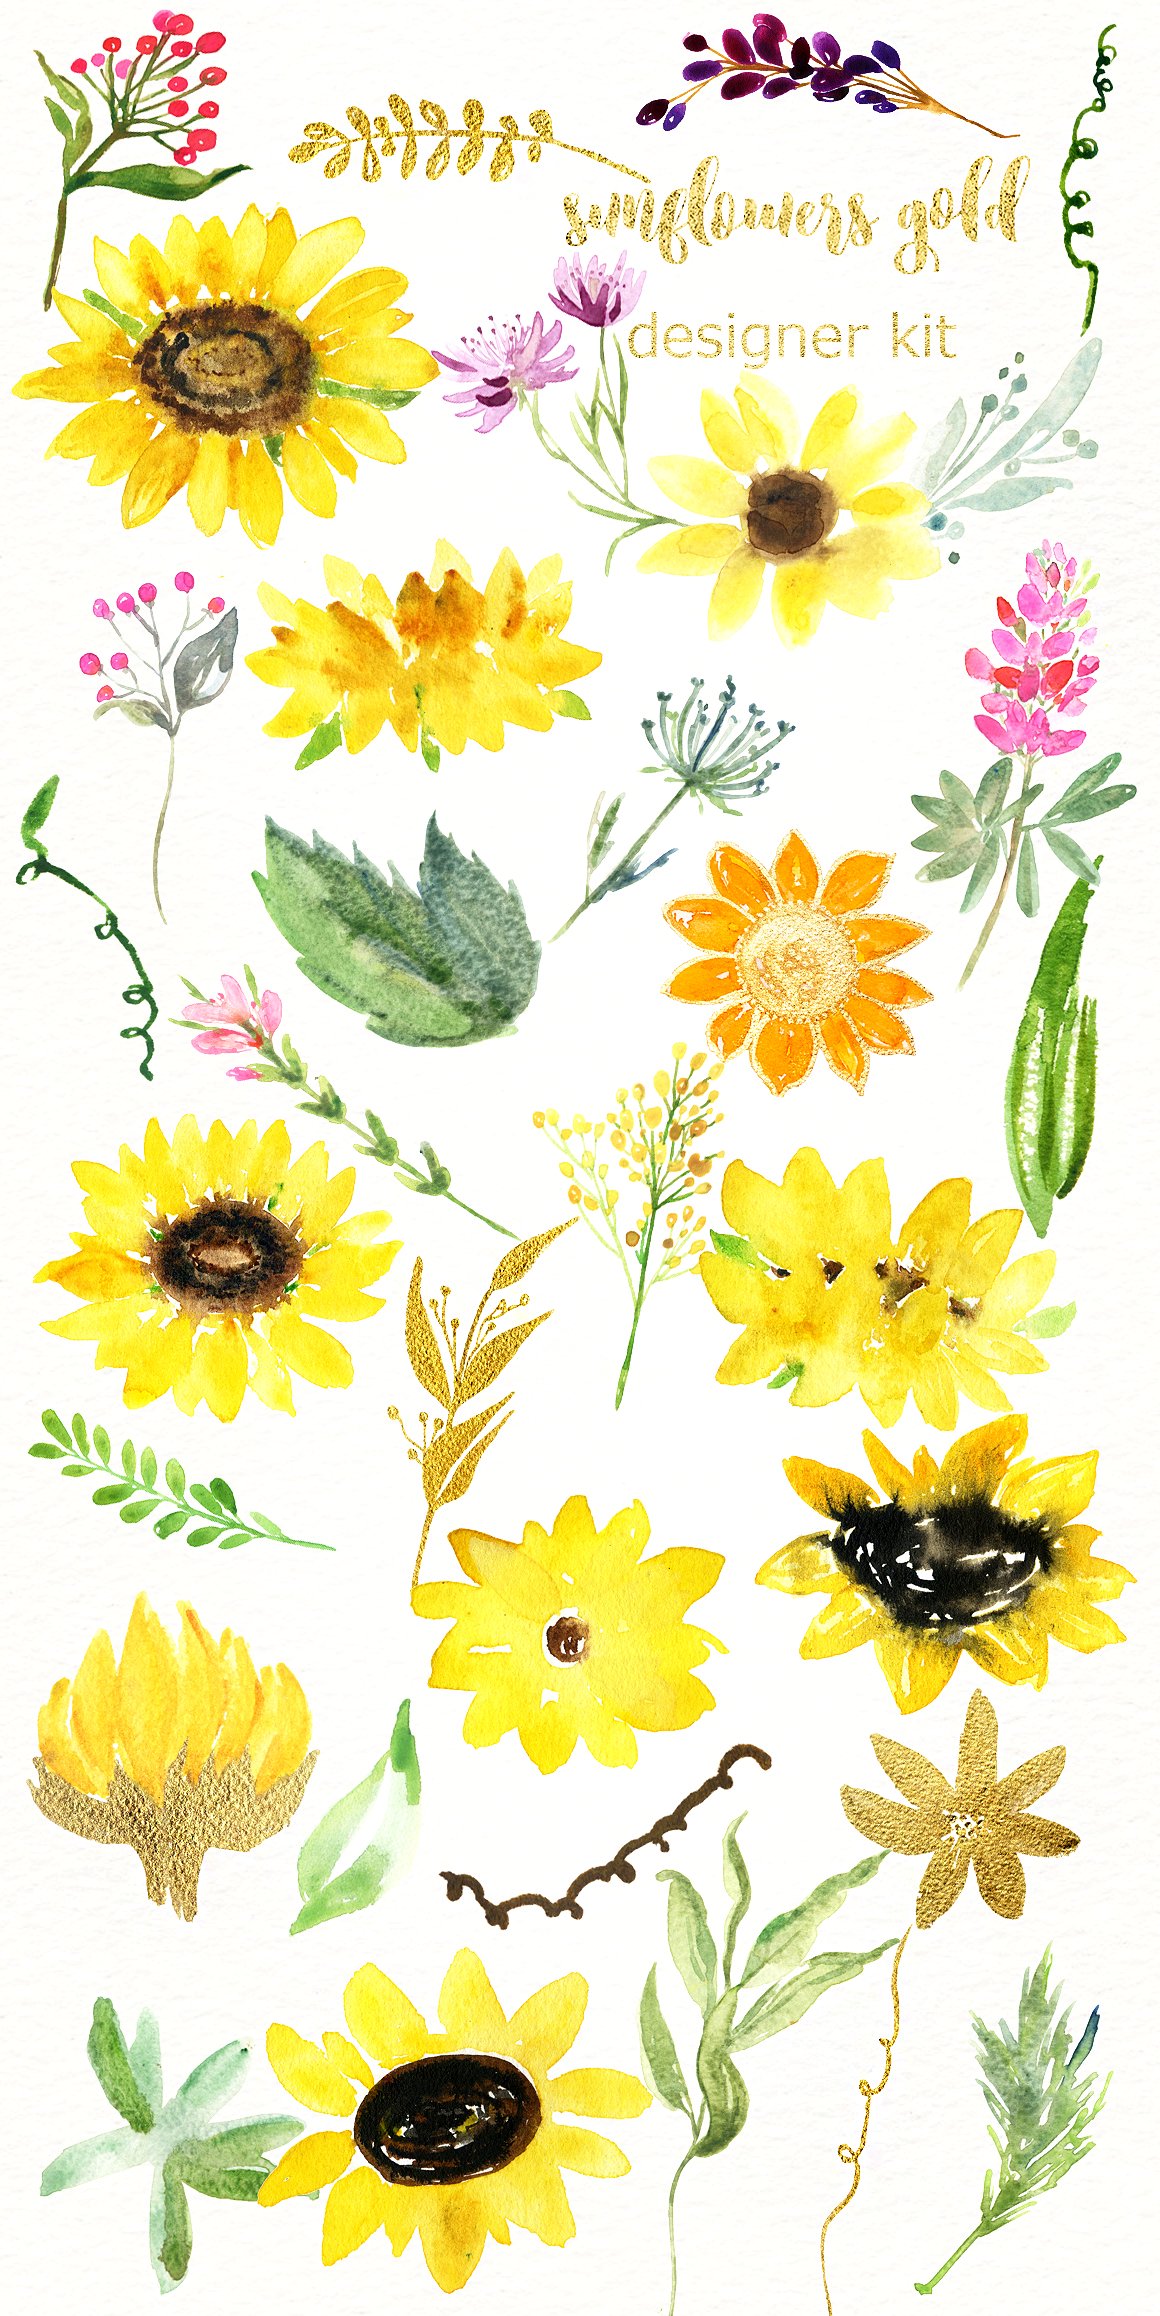 手绘水彩花卉向日葵设计素材 Sunflowers-and-p